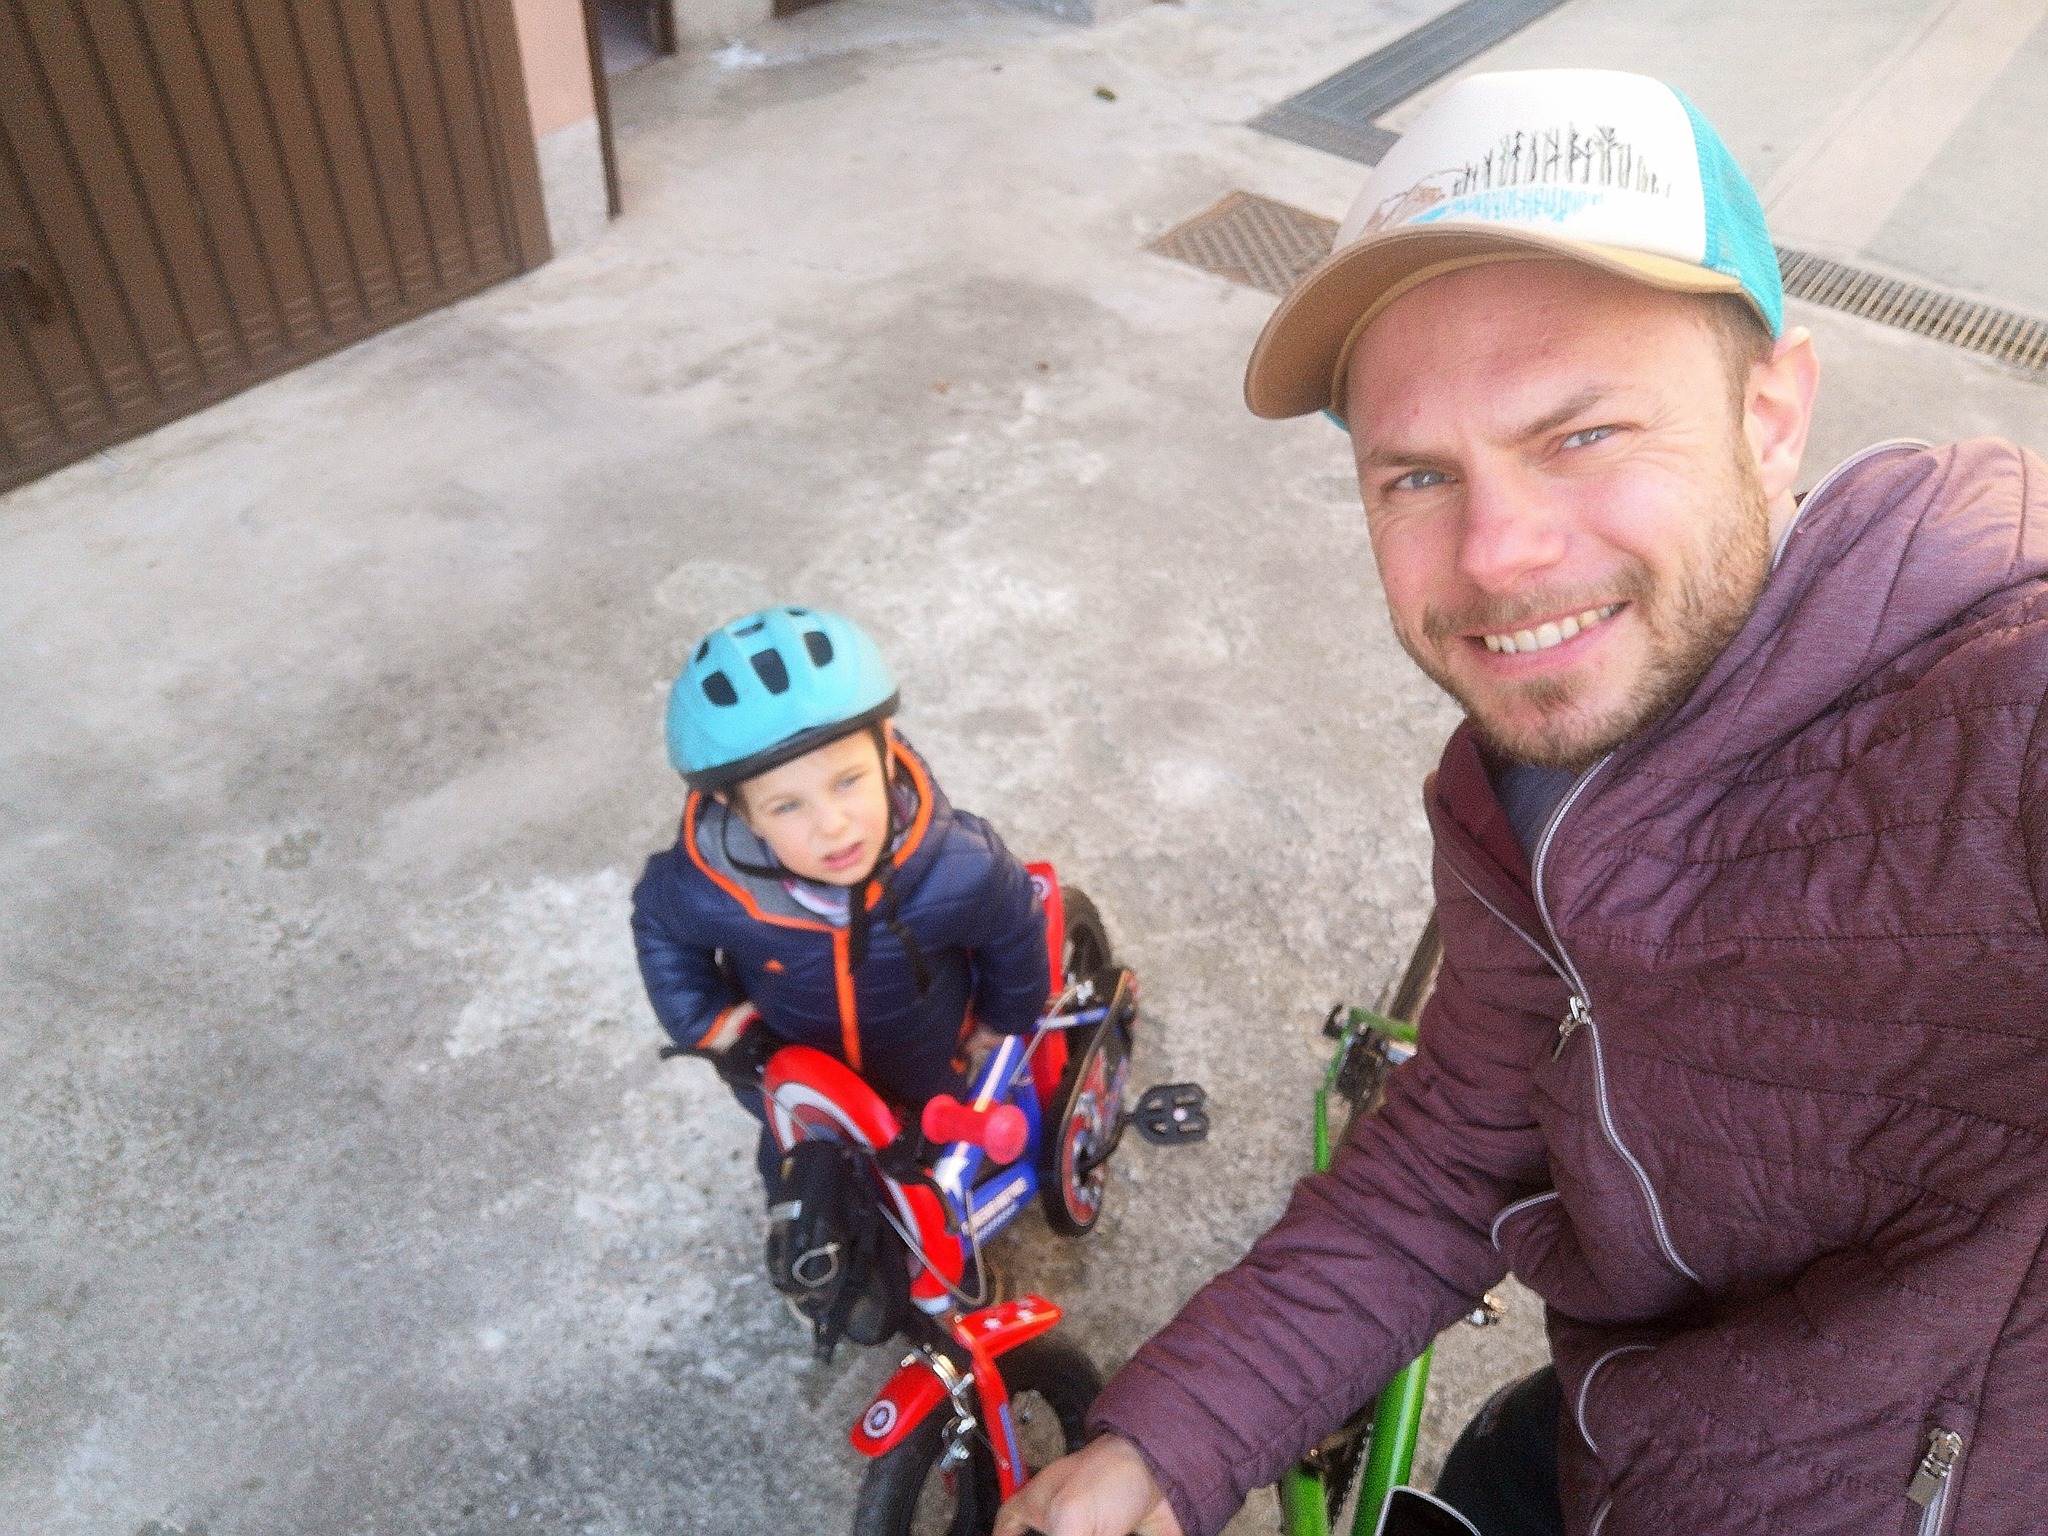 Accompagnare un bambino in bici